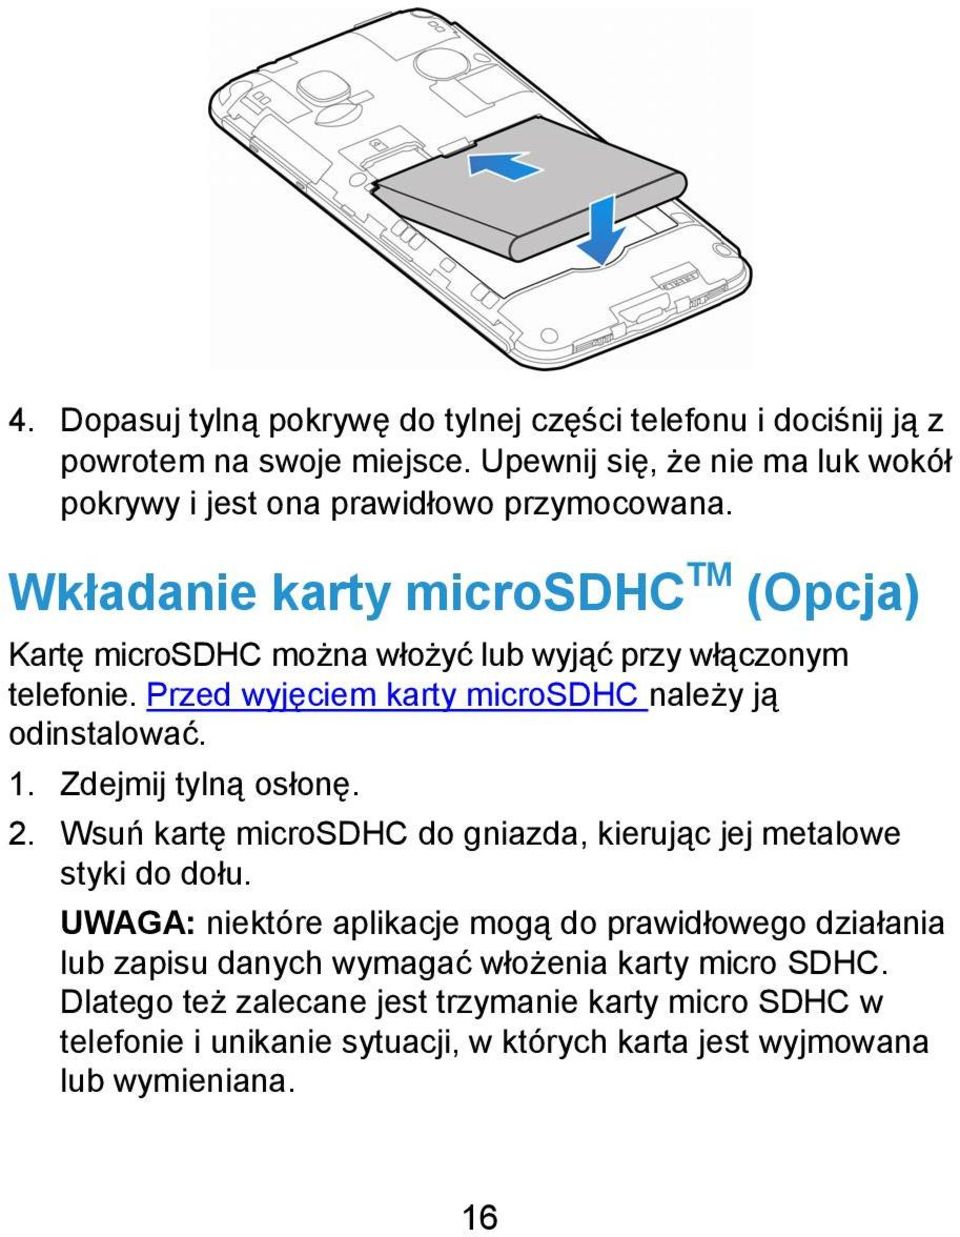 Wkładanie karty microsdhc TM (Opcja) Kartę microsdhc można włożyć lub wyjąć przy włączonym telefonie. Przed wyjęciem karty microsdhc należy ją odinstalować. 1.